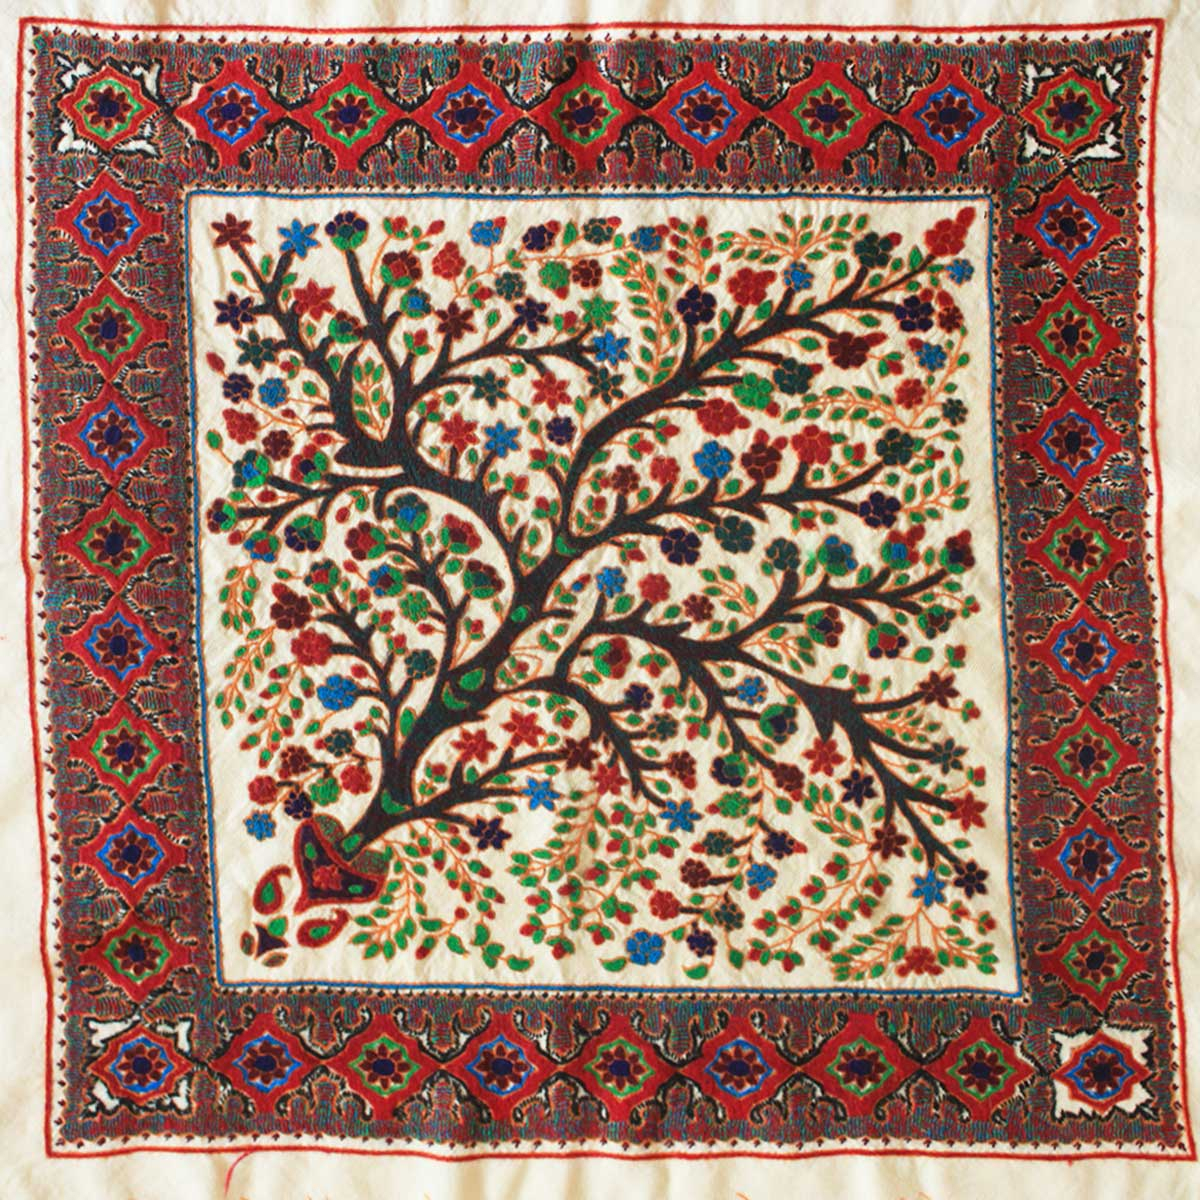 Persian Embroidery Patterns Pateh Wikipedia